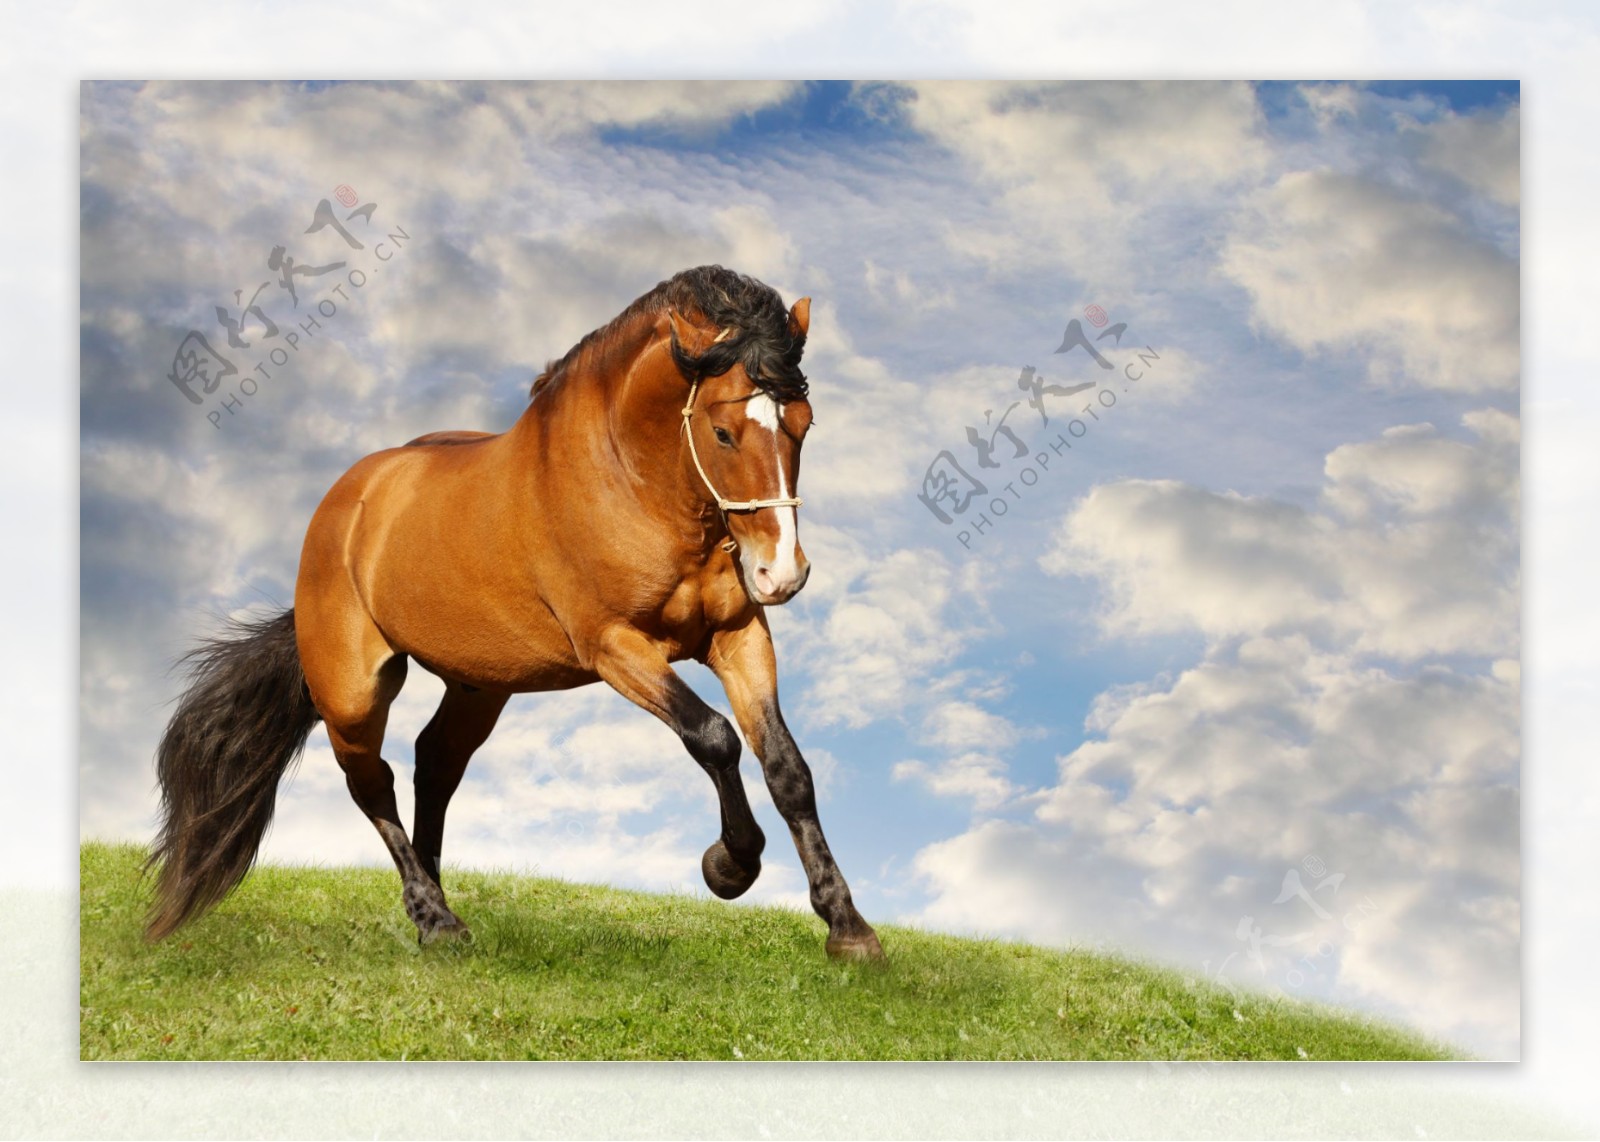 草地上奔跑的马匹图片